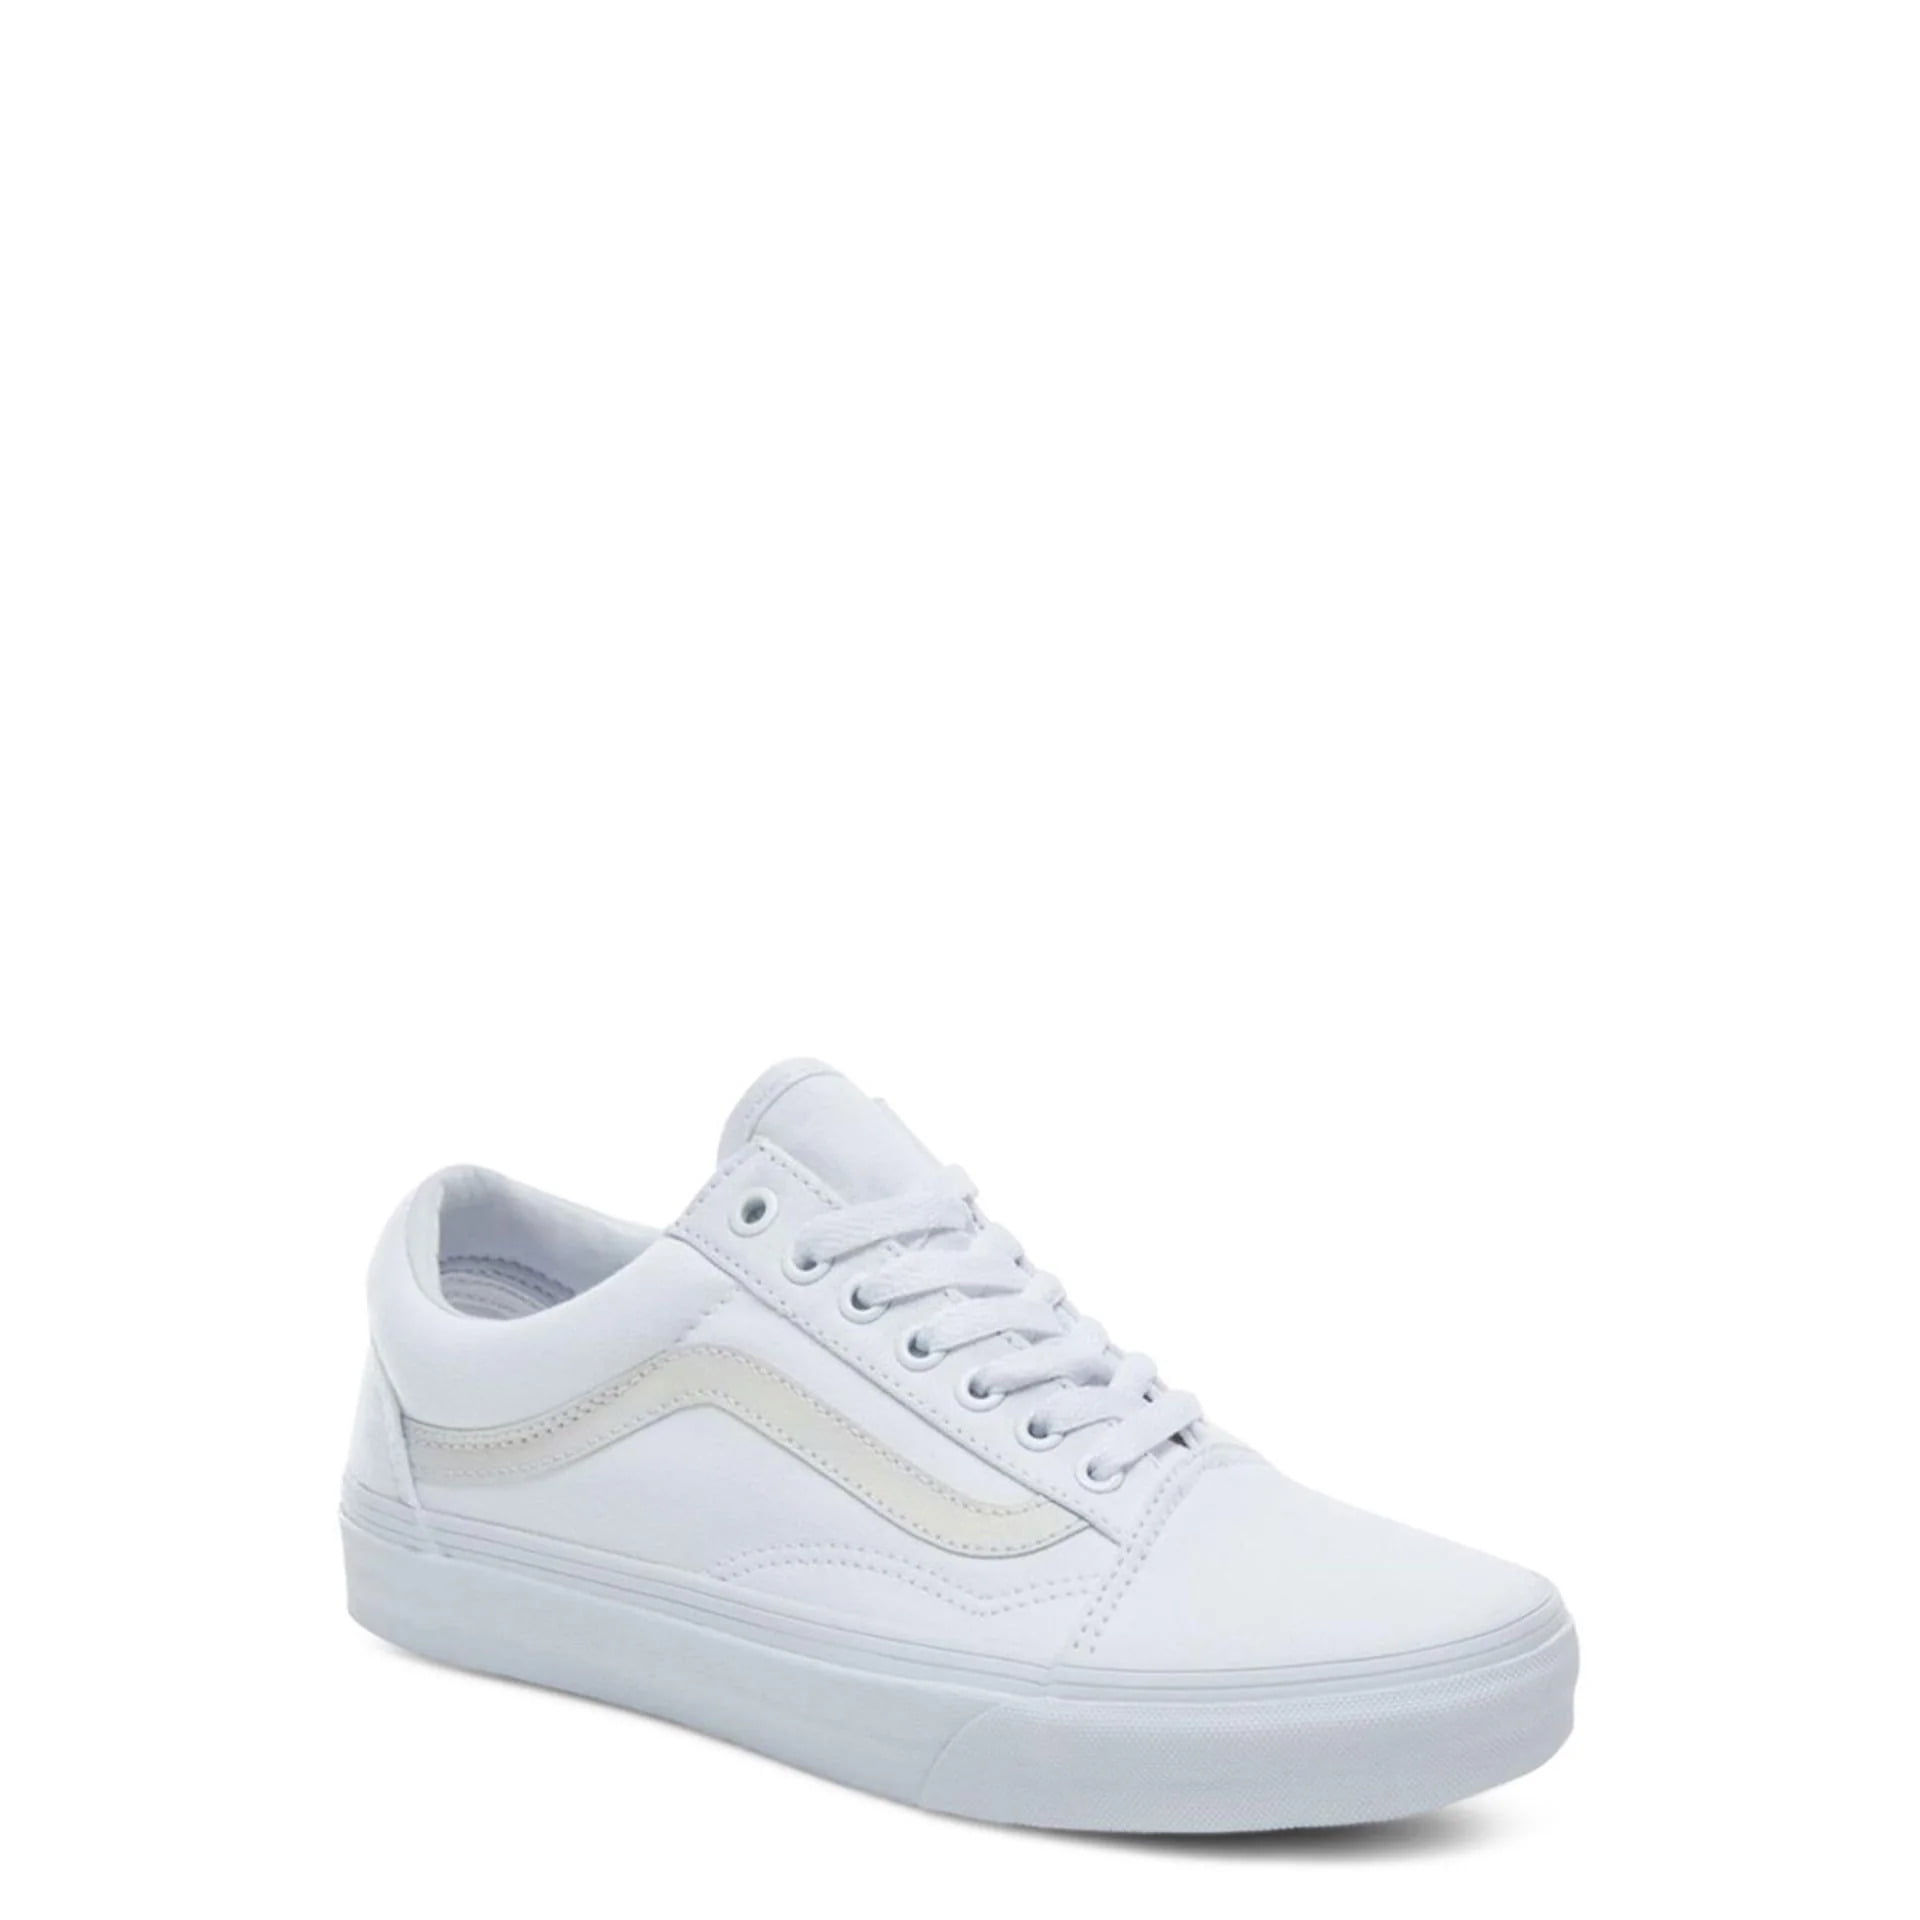 Vans Unisex Old Skool Classic Skate Shoes - True White - 9